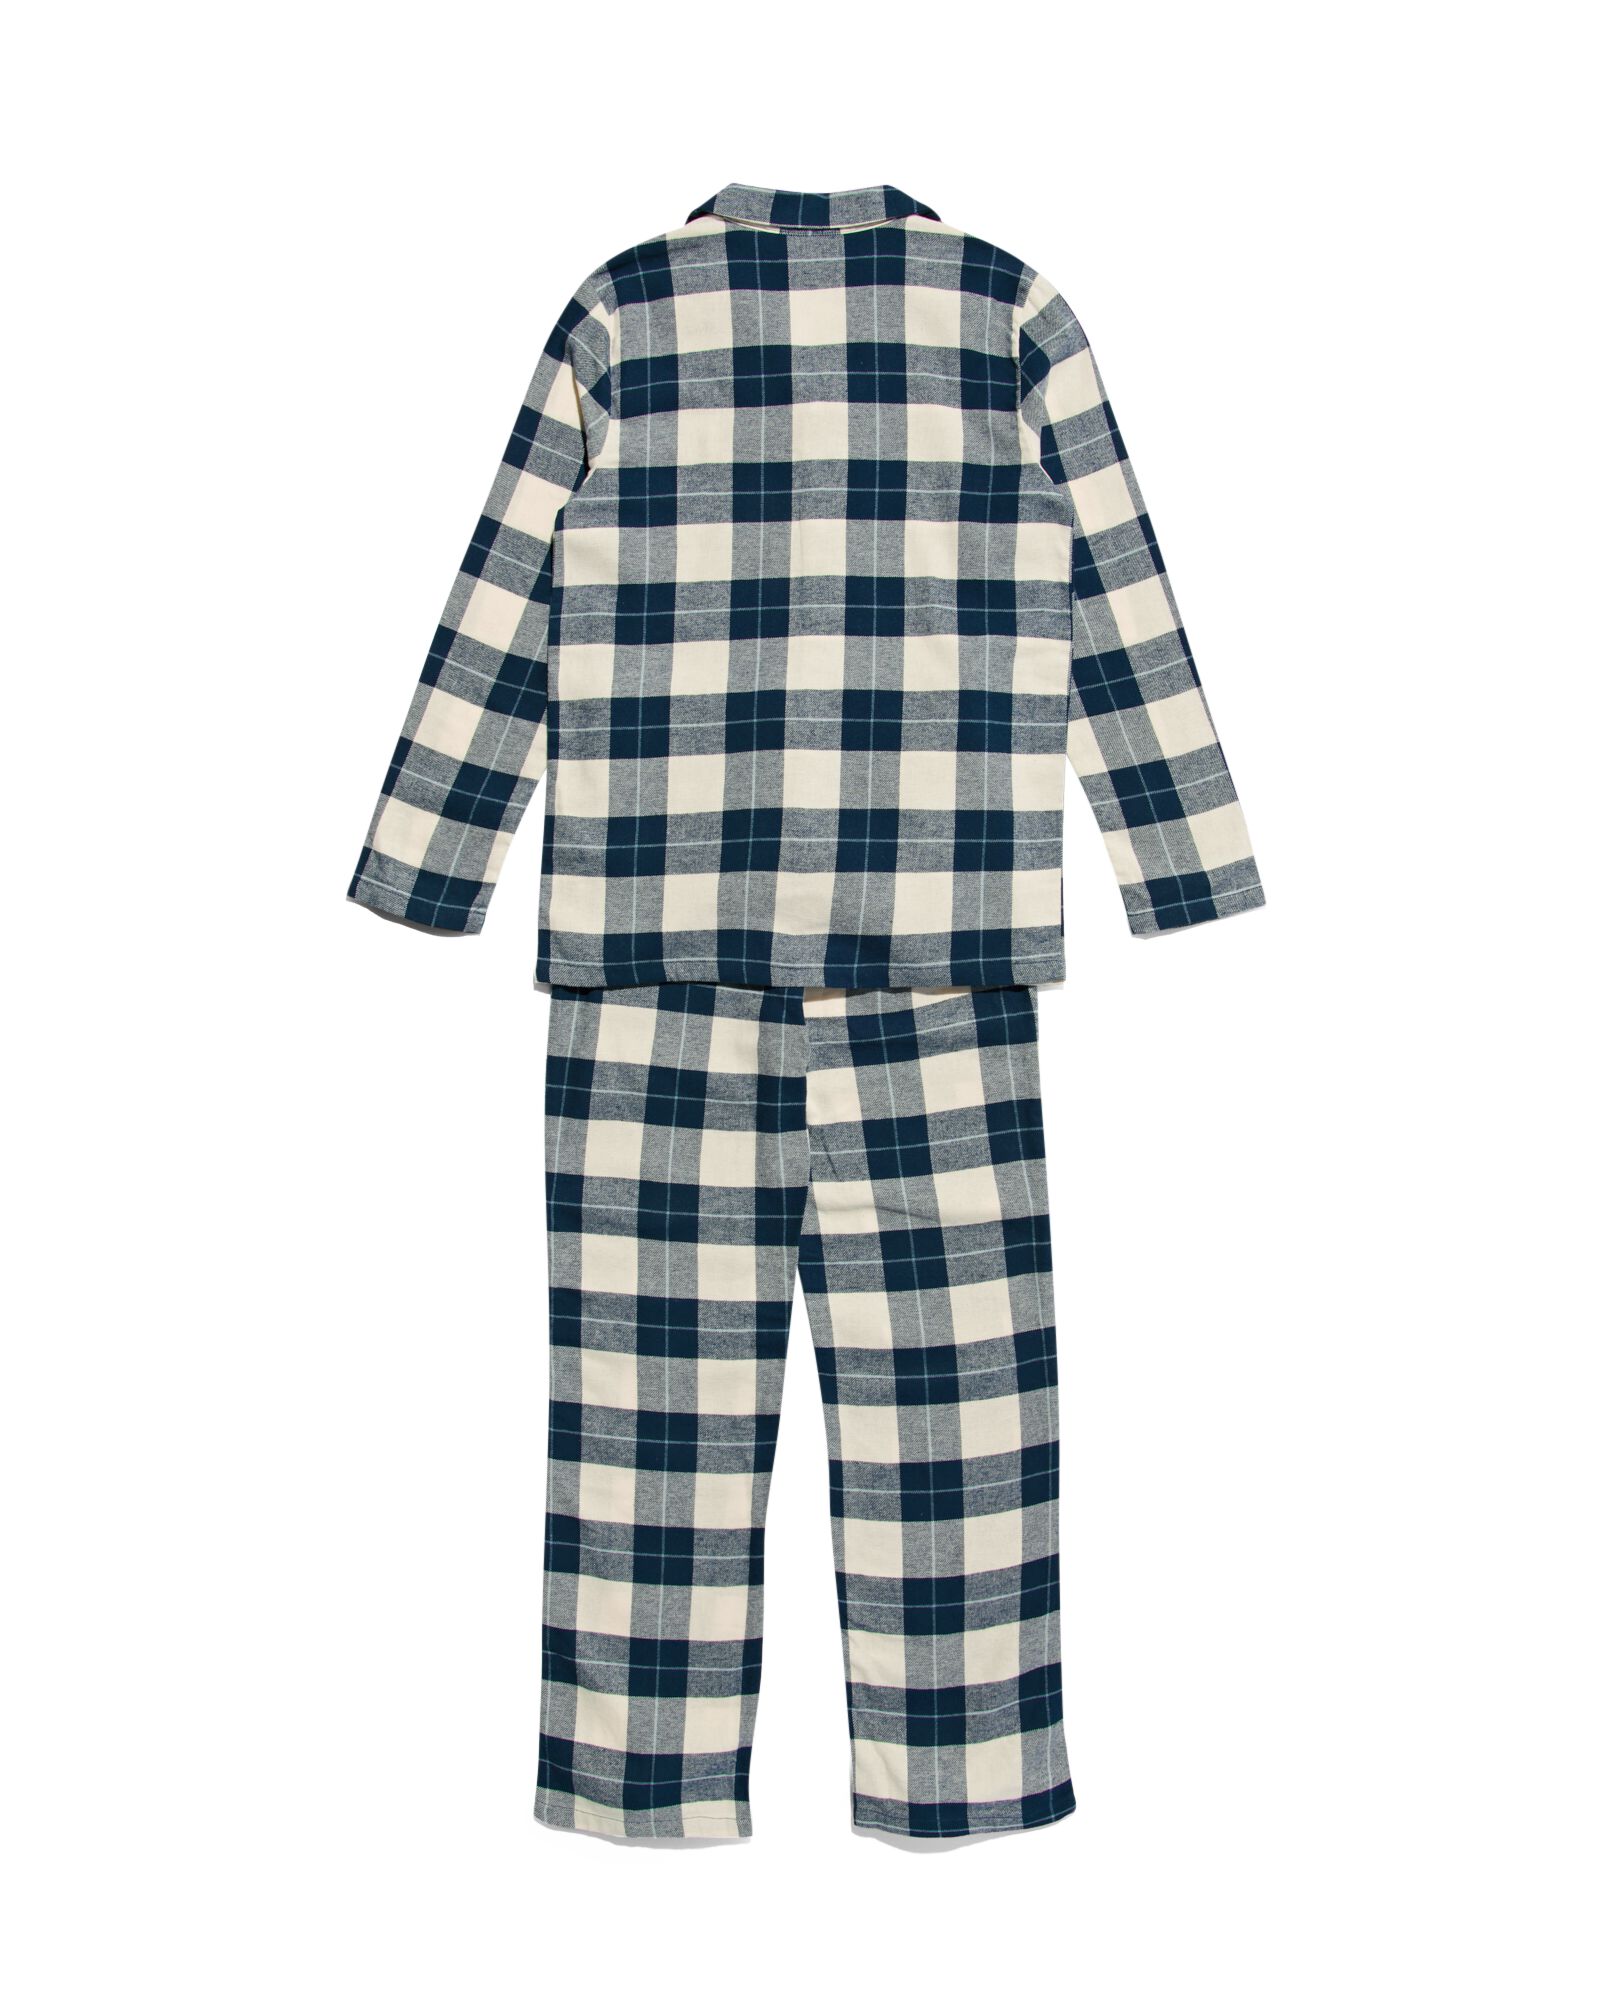 Kinder-Pyjama, Flanell, kariert dunkelblau 158/164 - 23080483 - HEMA